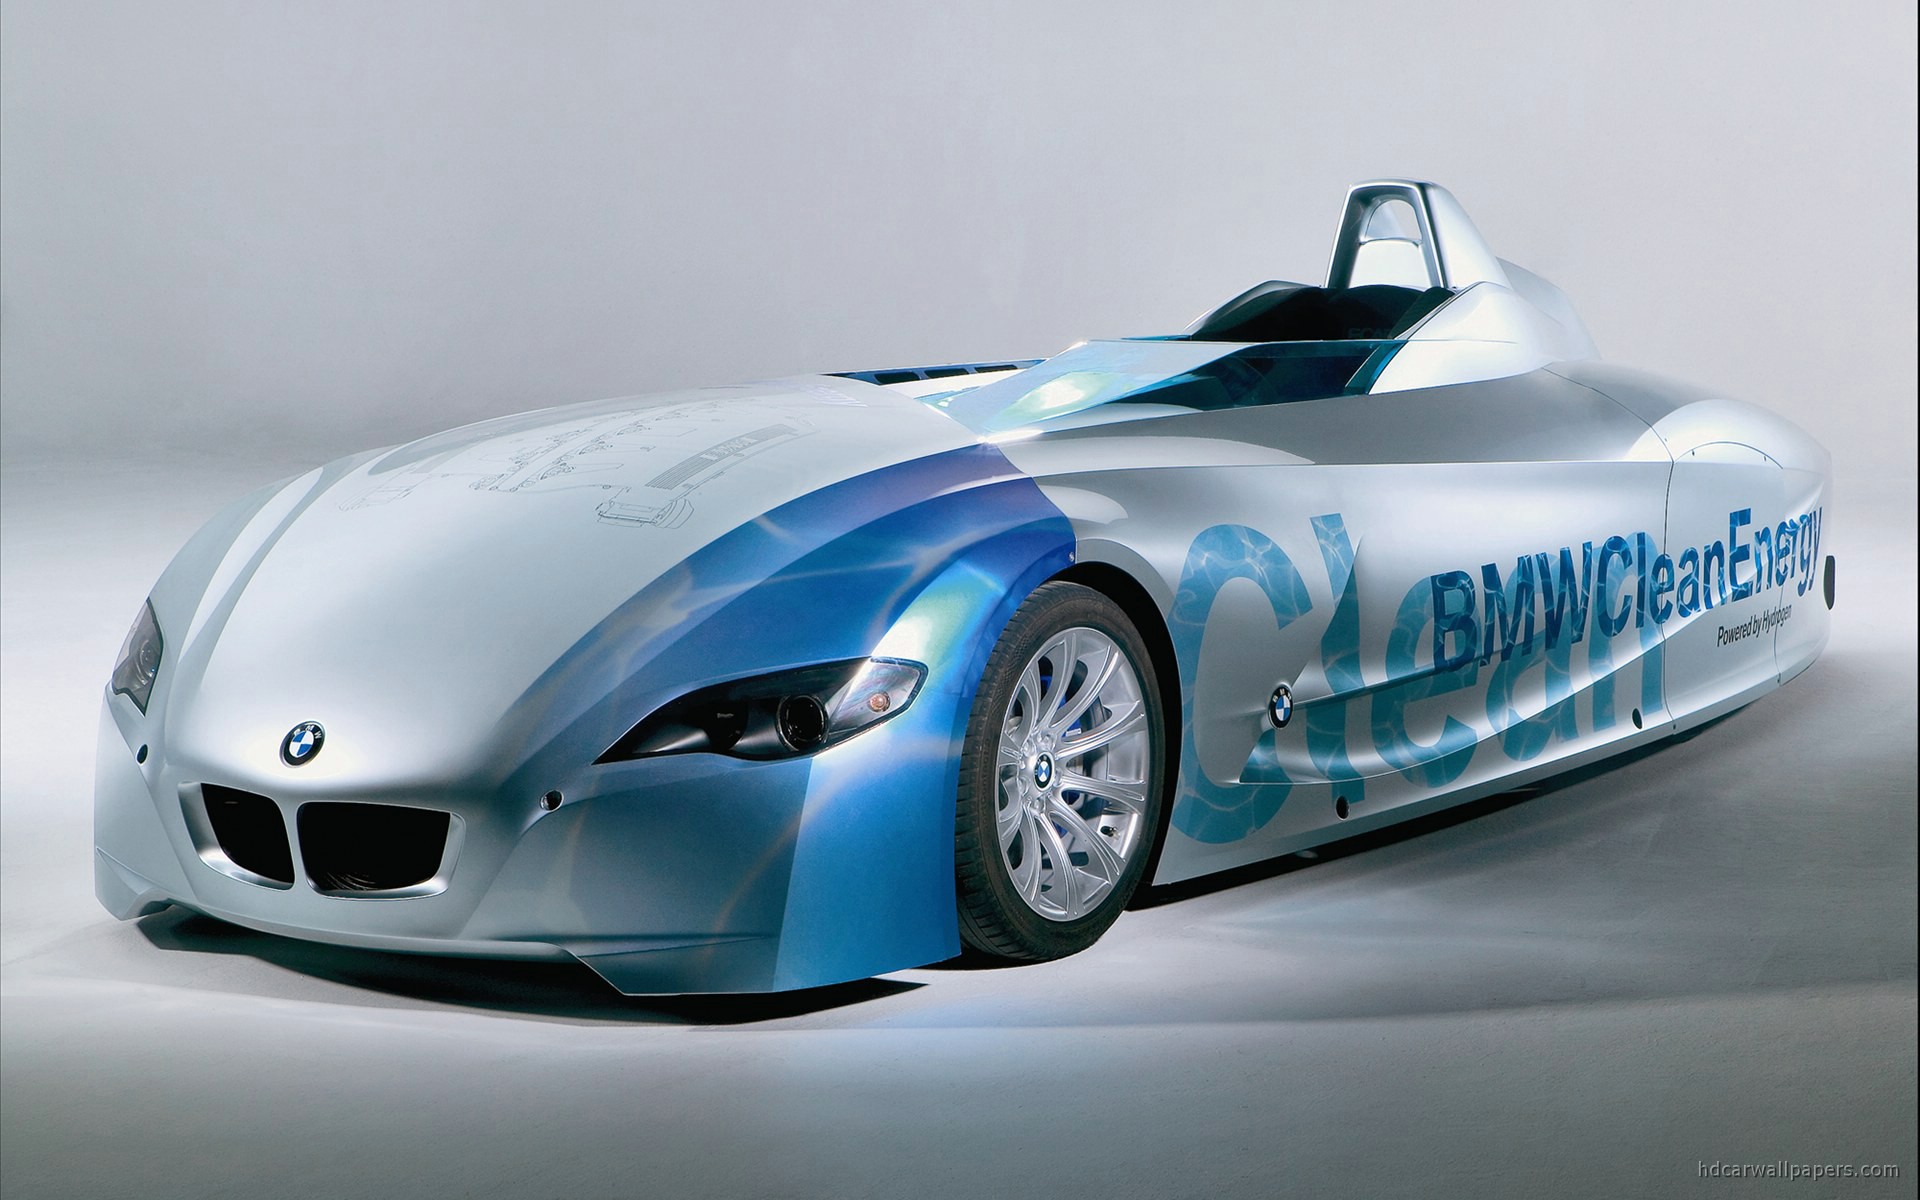 Bmw concept hydrogen car